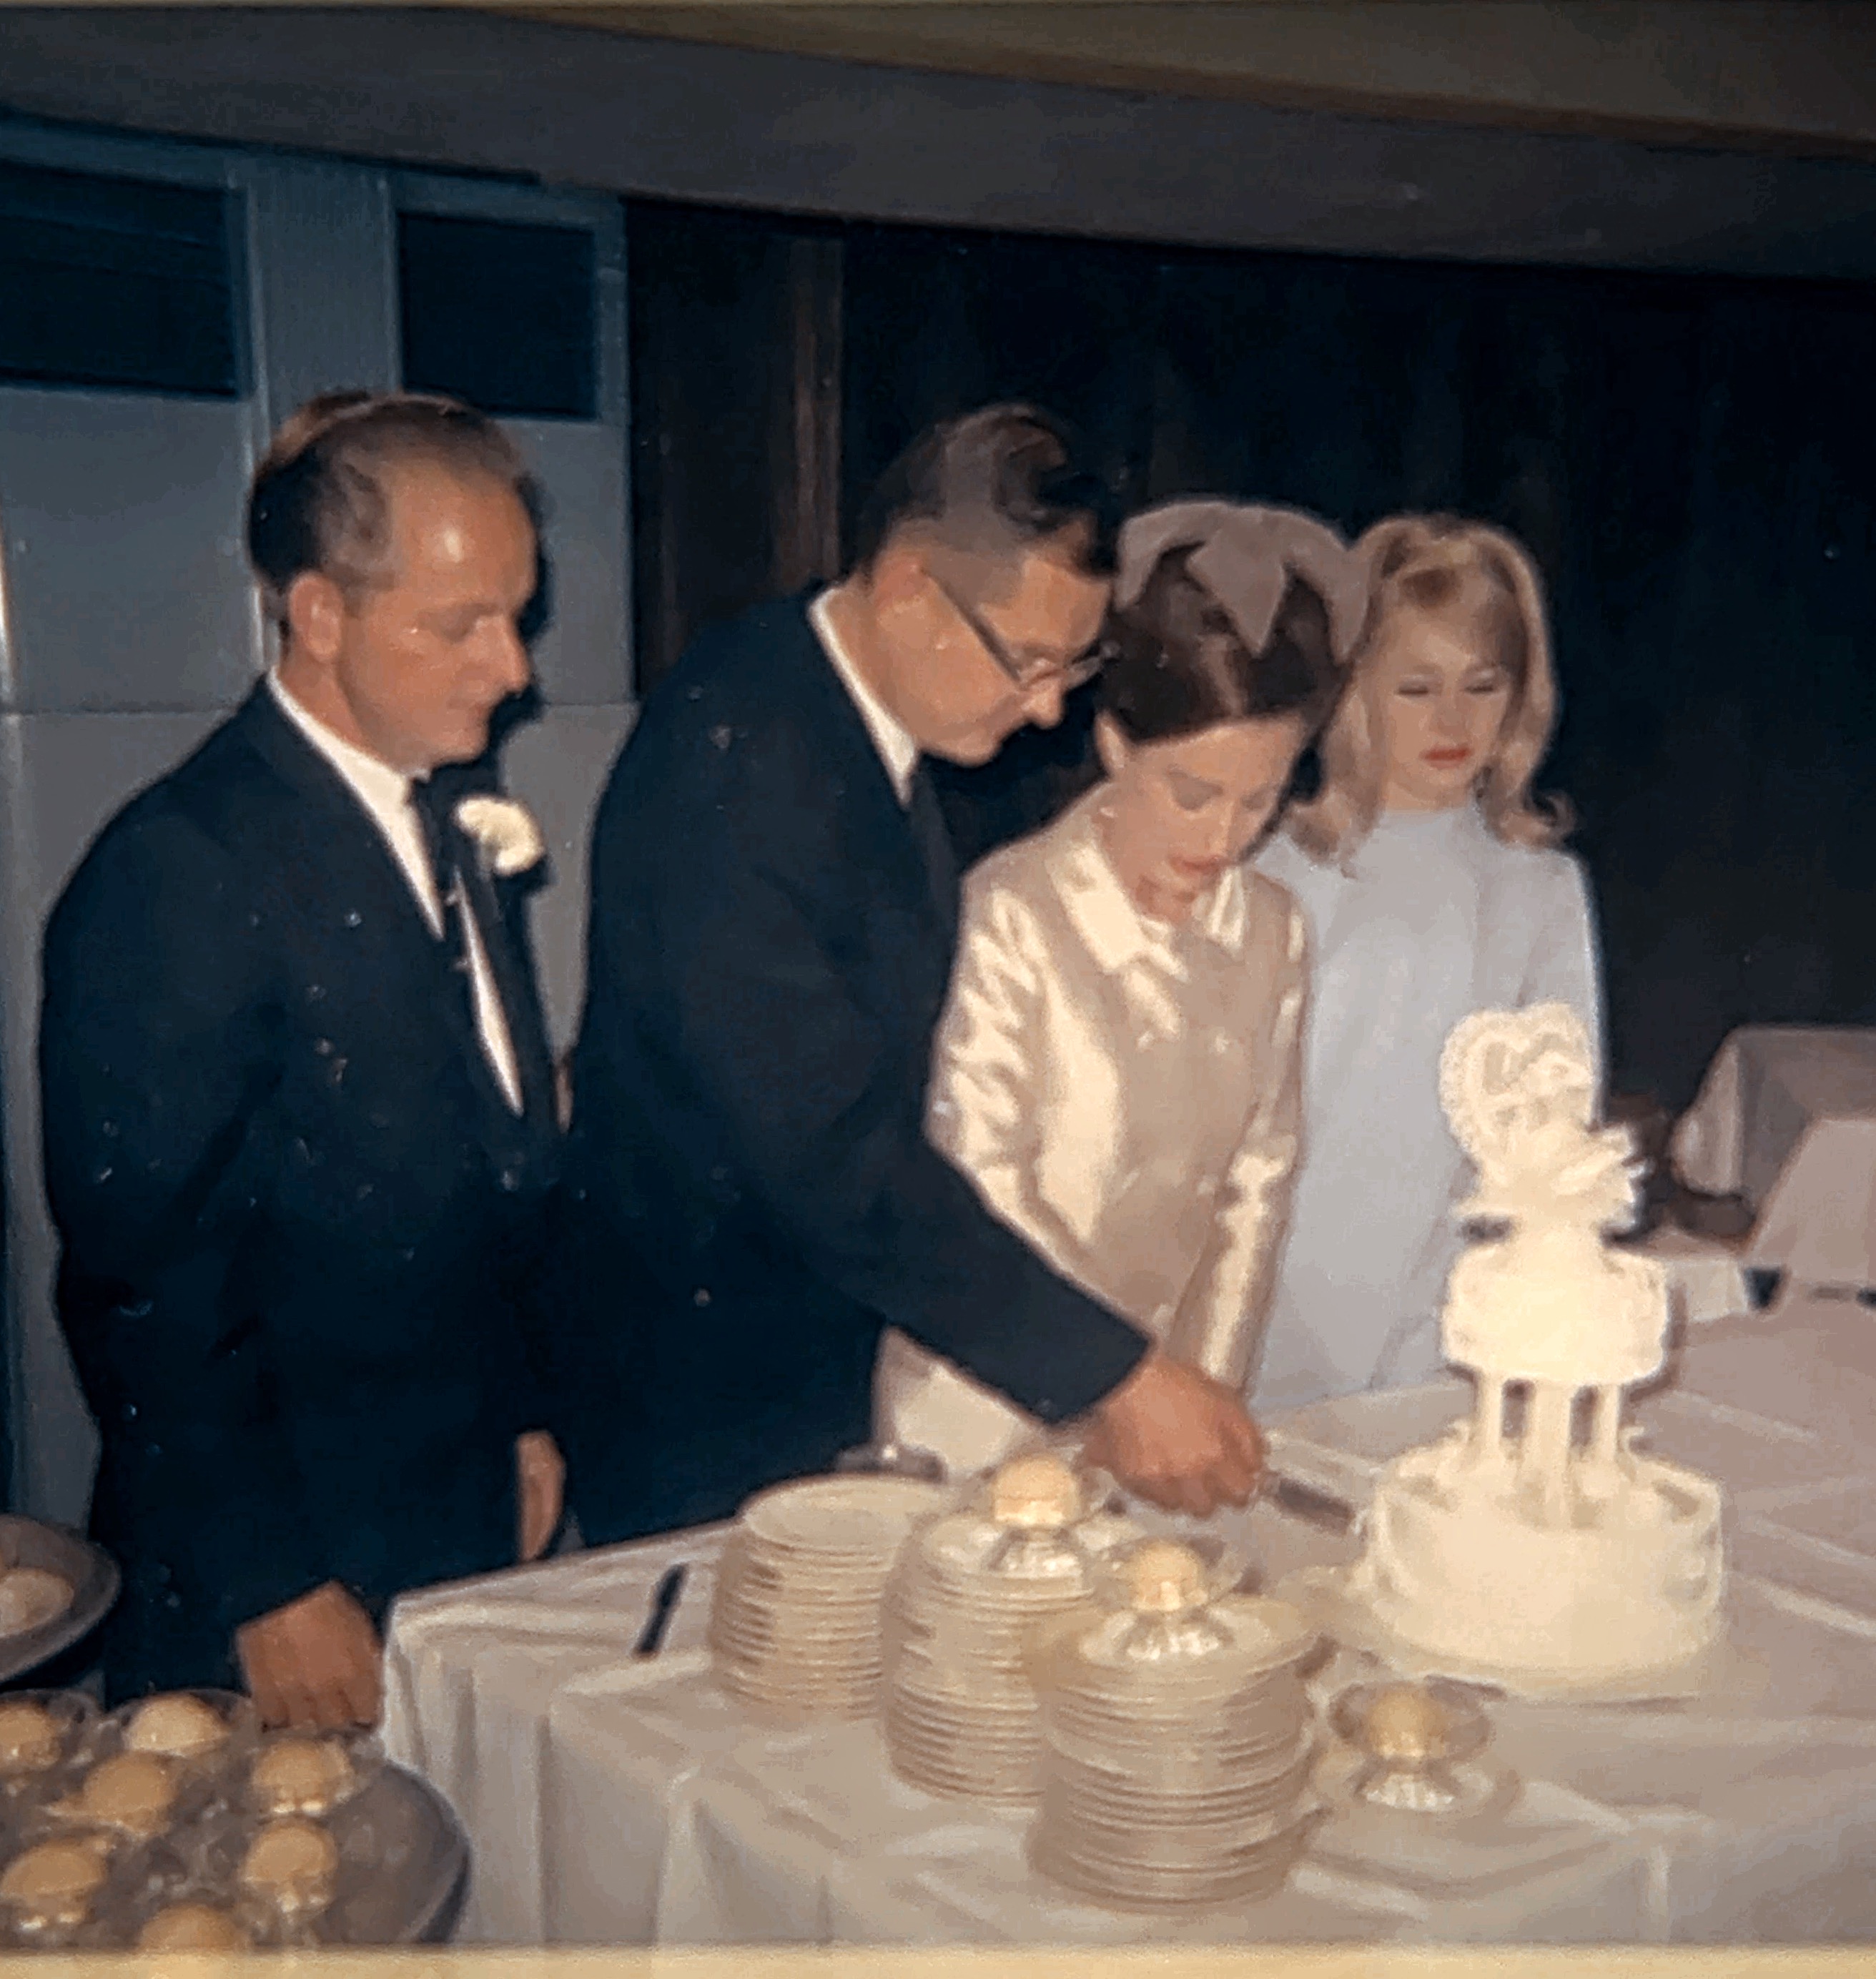 Ray Taubitz Wedding to Lois. Bernie Taubitz standing up as best man. Photo taken 1966.